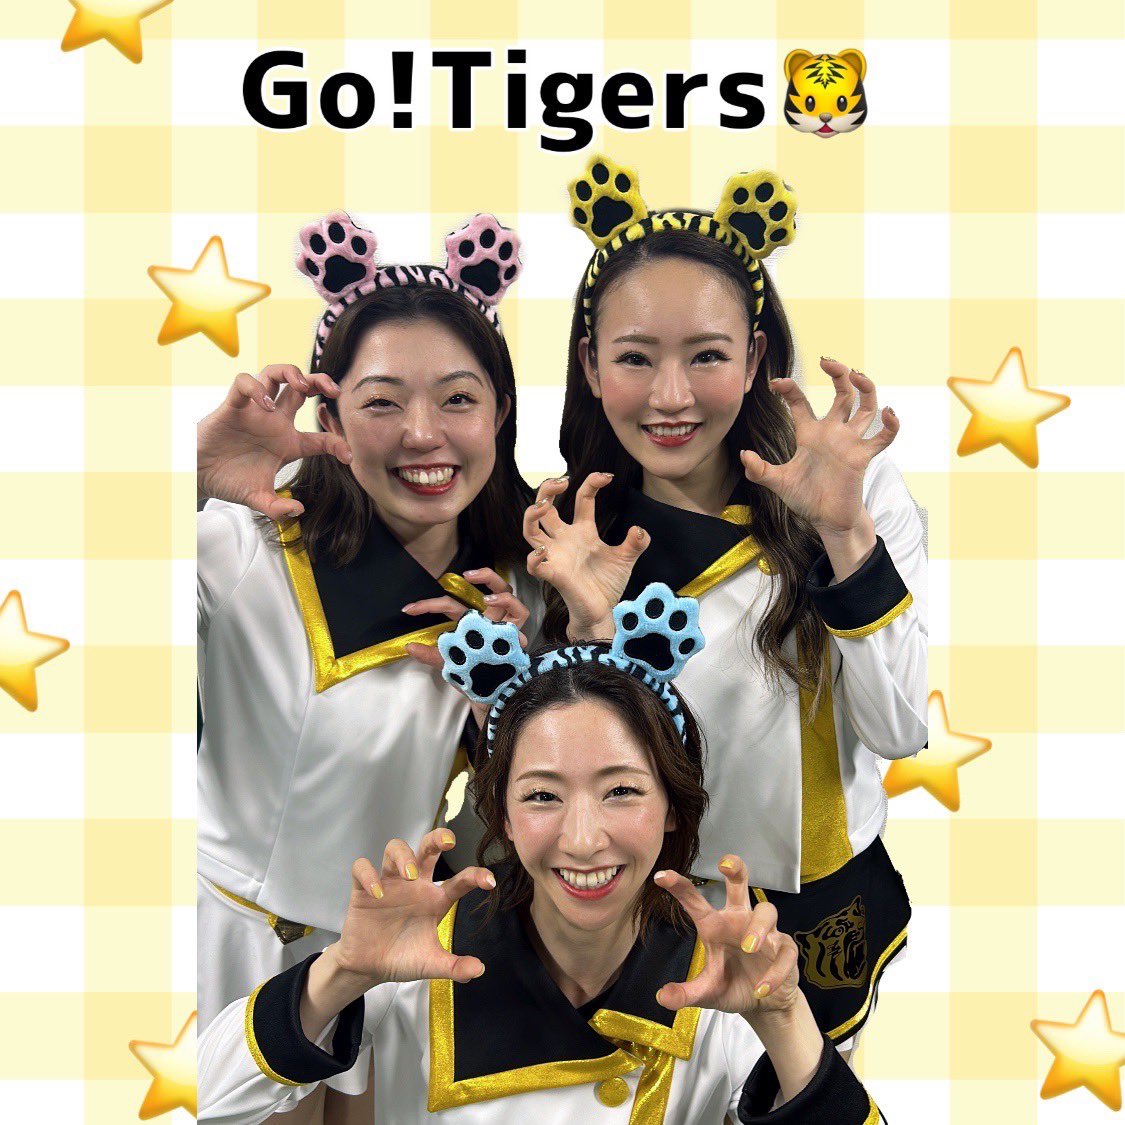 ／ 🐯まもなく #ラッキー7 のお時間です!🎈 ＼　 お手持ちの応援グッズの準備はOKですか〜⁇ まだまだここから🔥😤　 #阪神タイガース が勝ちを頂くで〜!💪 #ARE_GOES_ON #タイガースガールズ